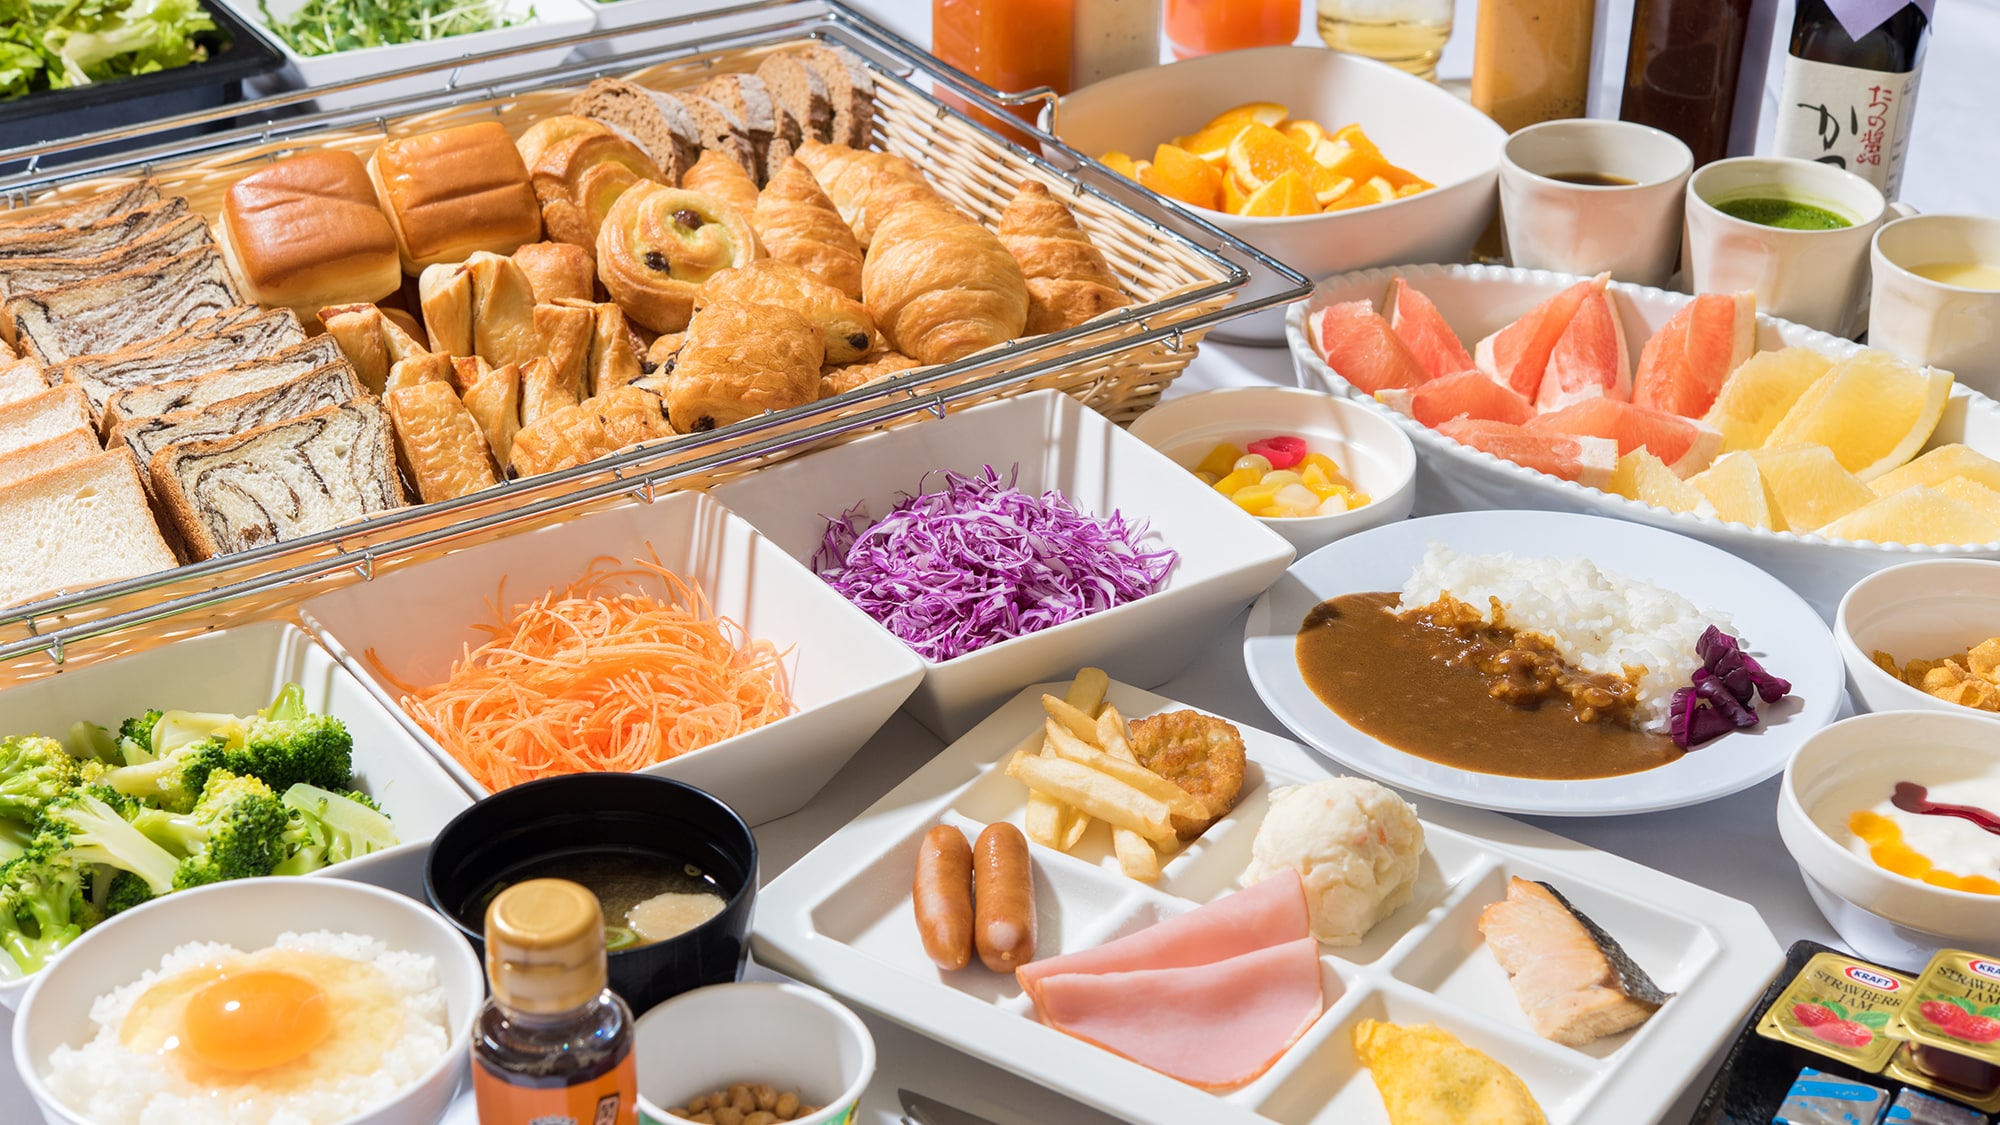 【일본식 조식 뷔페】 약 65 종류를 뷔페로 준비 ♪ 건강 시스템에서 얽힌 계까지 다양한 음식을 준비.